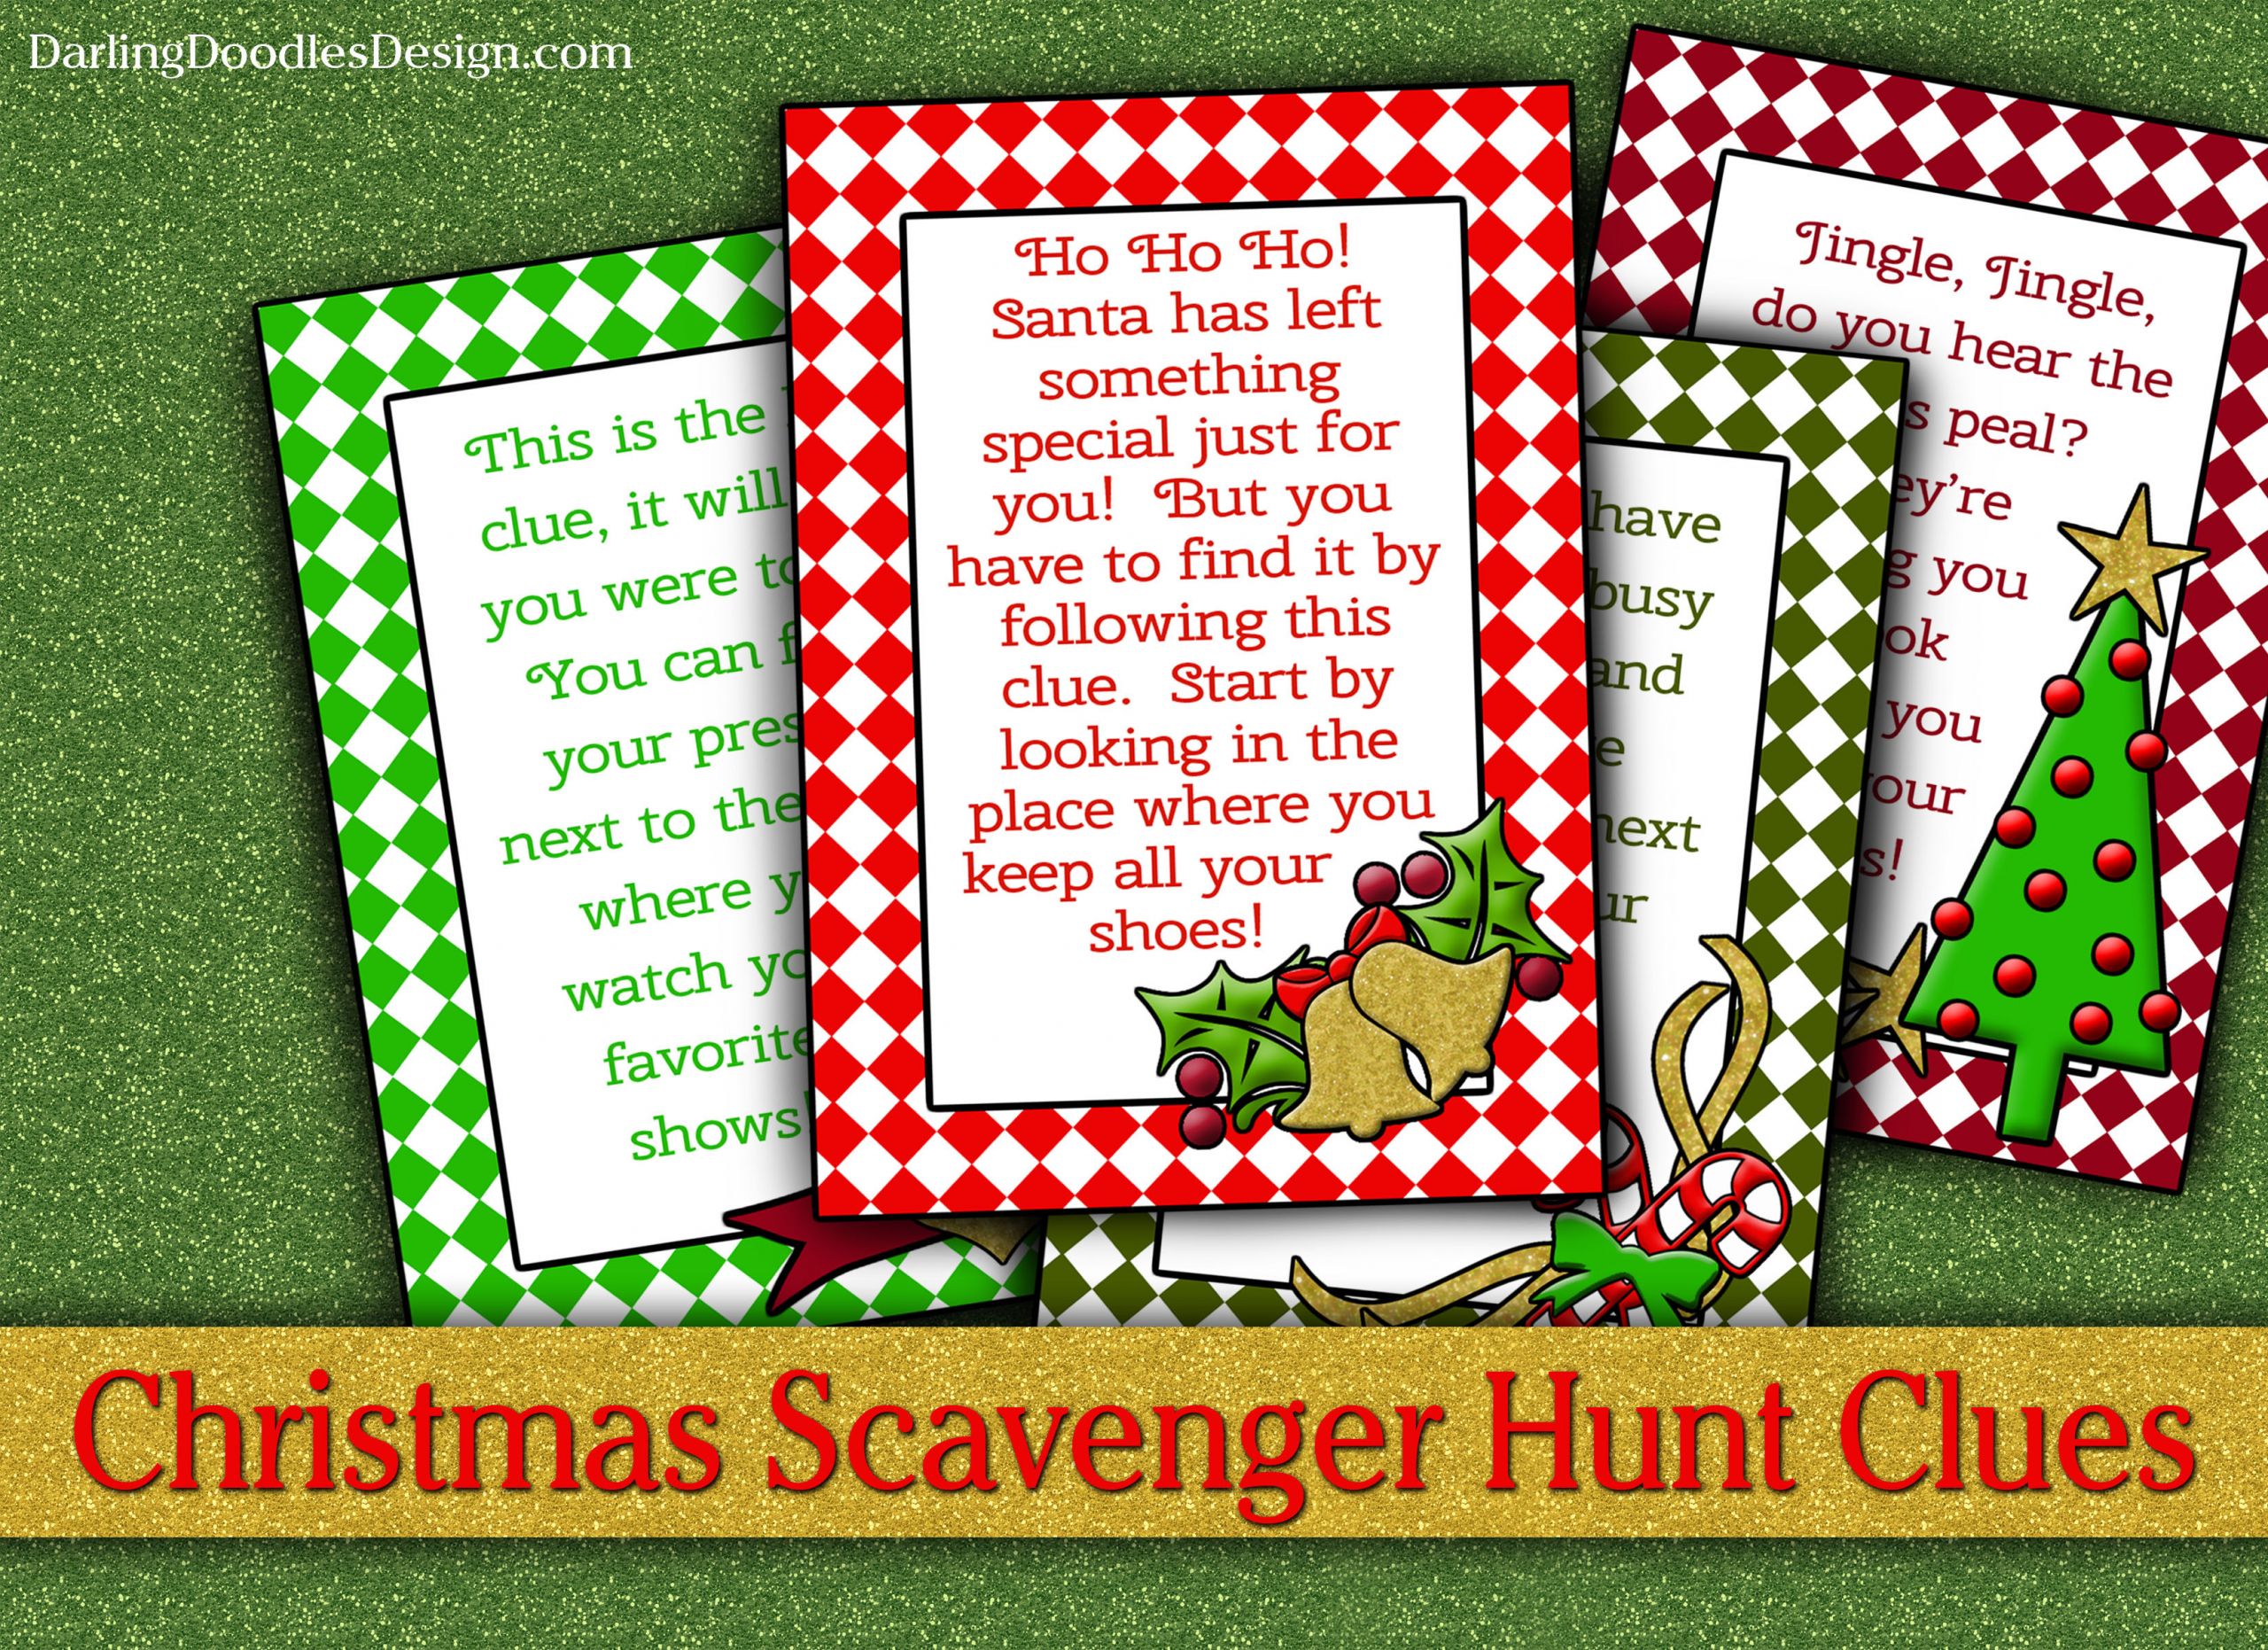 Christmas Scavenger Hunt Ideas
 December 2013